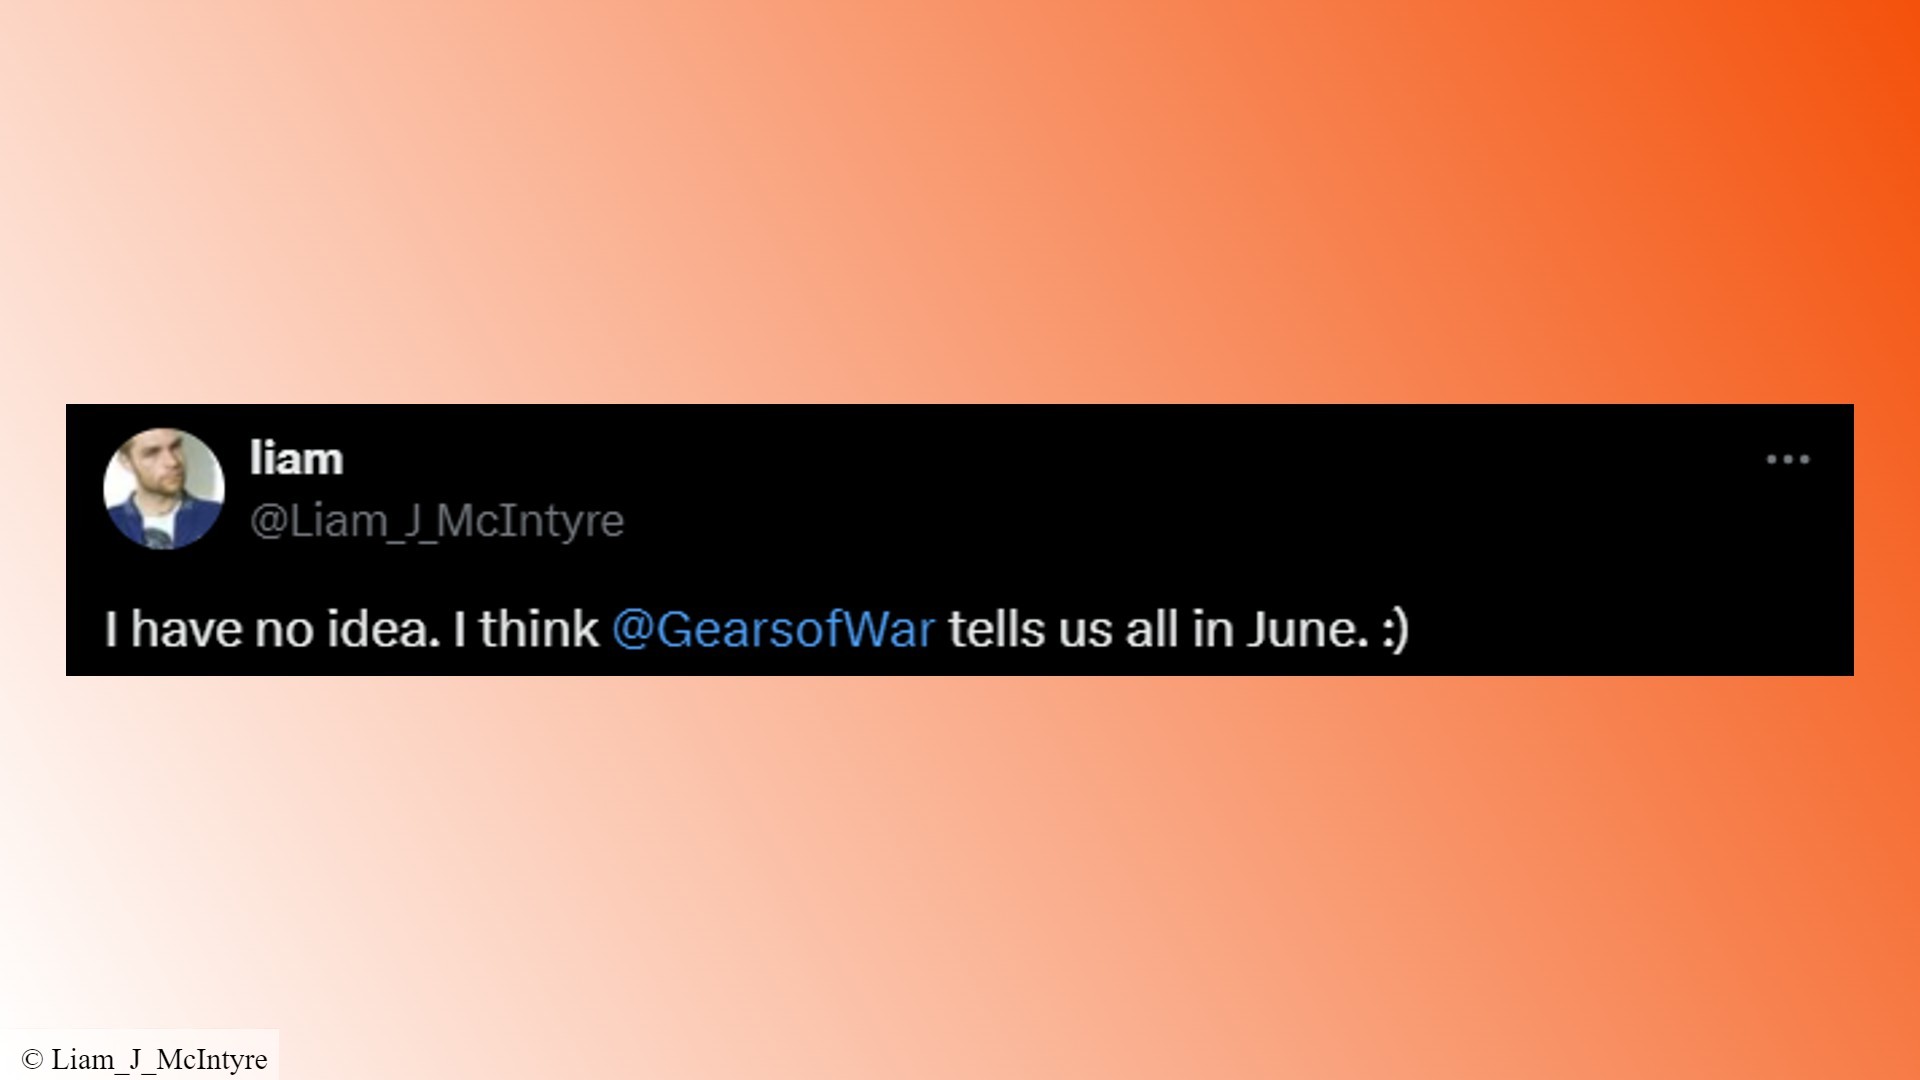 Gears of War 6 ortaya çıkıyor: Gears 5 aktörü Liam McIntyre'den bir tweet